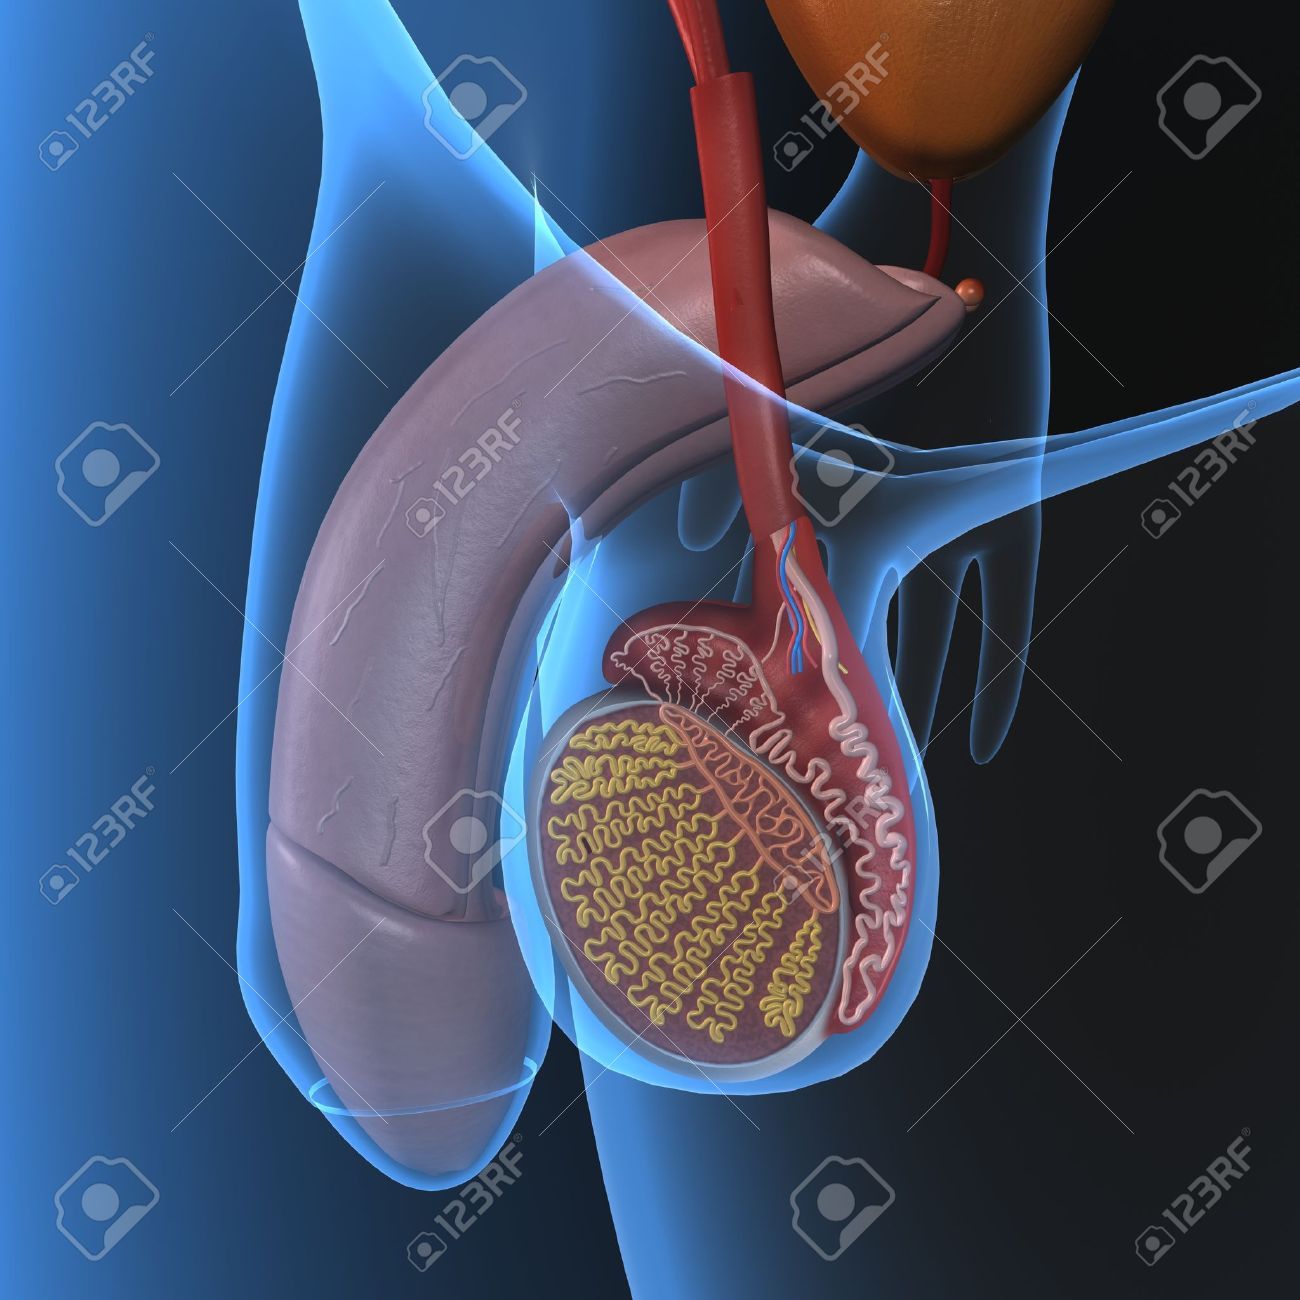 El implante de prótesis de pene soluciona la disfunción eréctil en el 90% de los casos